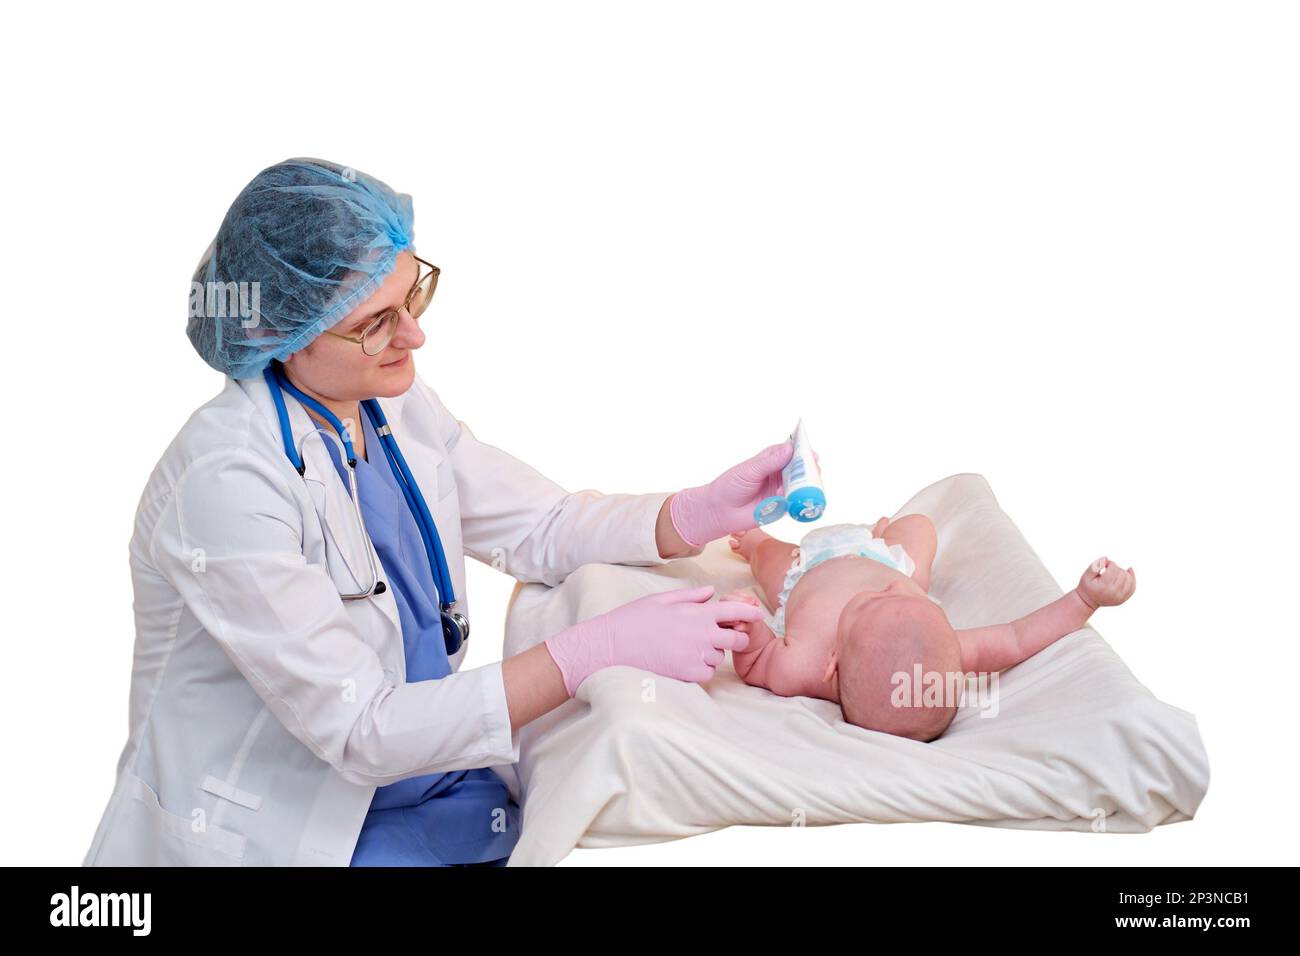 Il medico spalma una crema sulla pelle di un neonato, isolata su uno sfondo bianco. Infermiere dermatologo in uniforme. Bambino di due mesi Foto Stock